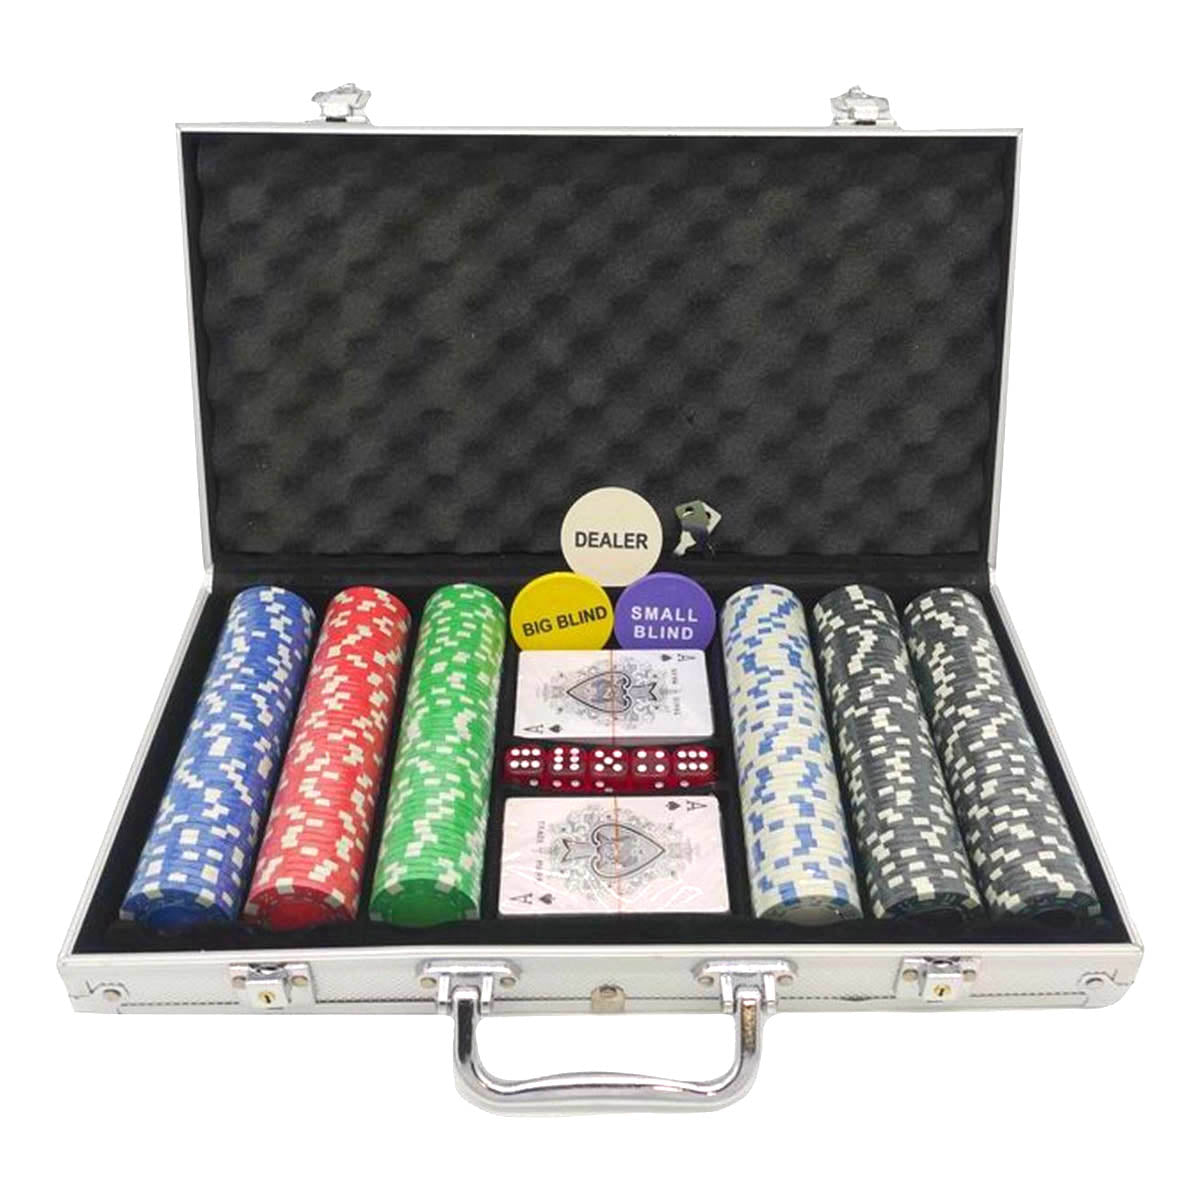 Ariko Ensemble de poker de luxe - Avec mélangeur de cartes - Boîtier en aluminium - Ensemble de poker professionnel avec 300 jetons et cartes de poker - Étui de poker